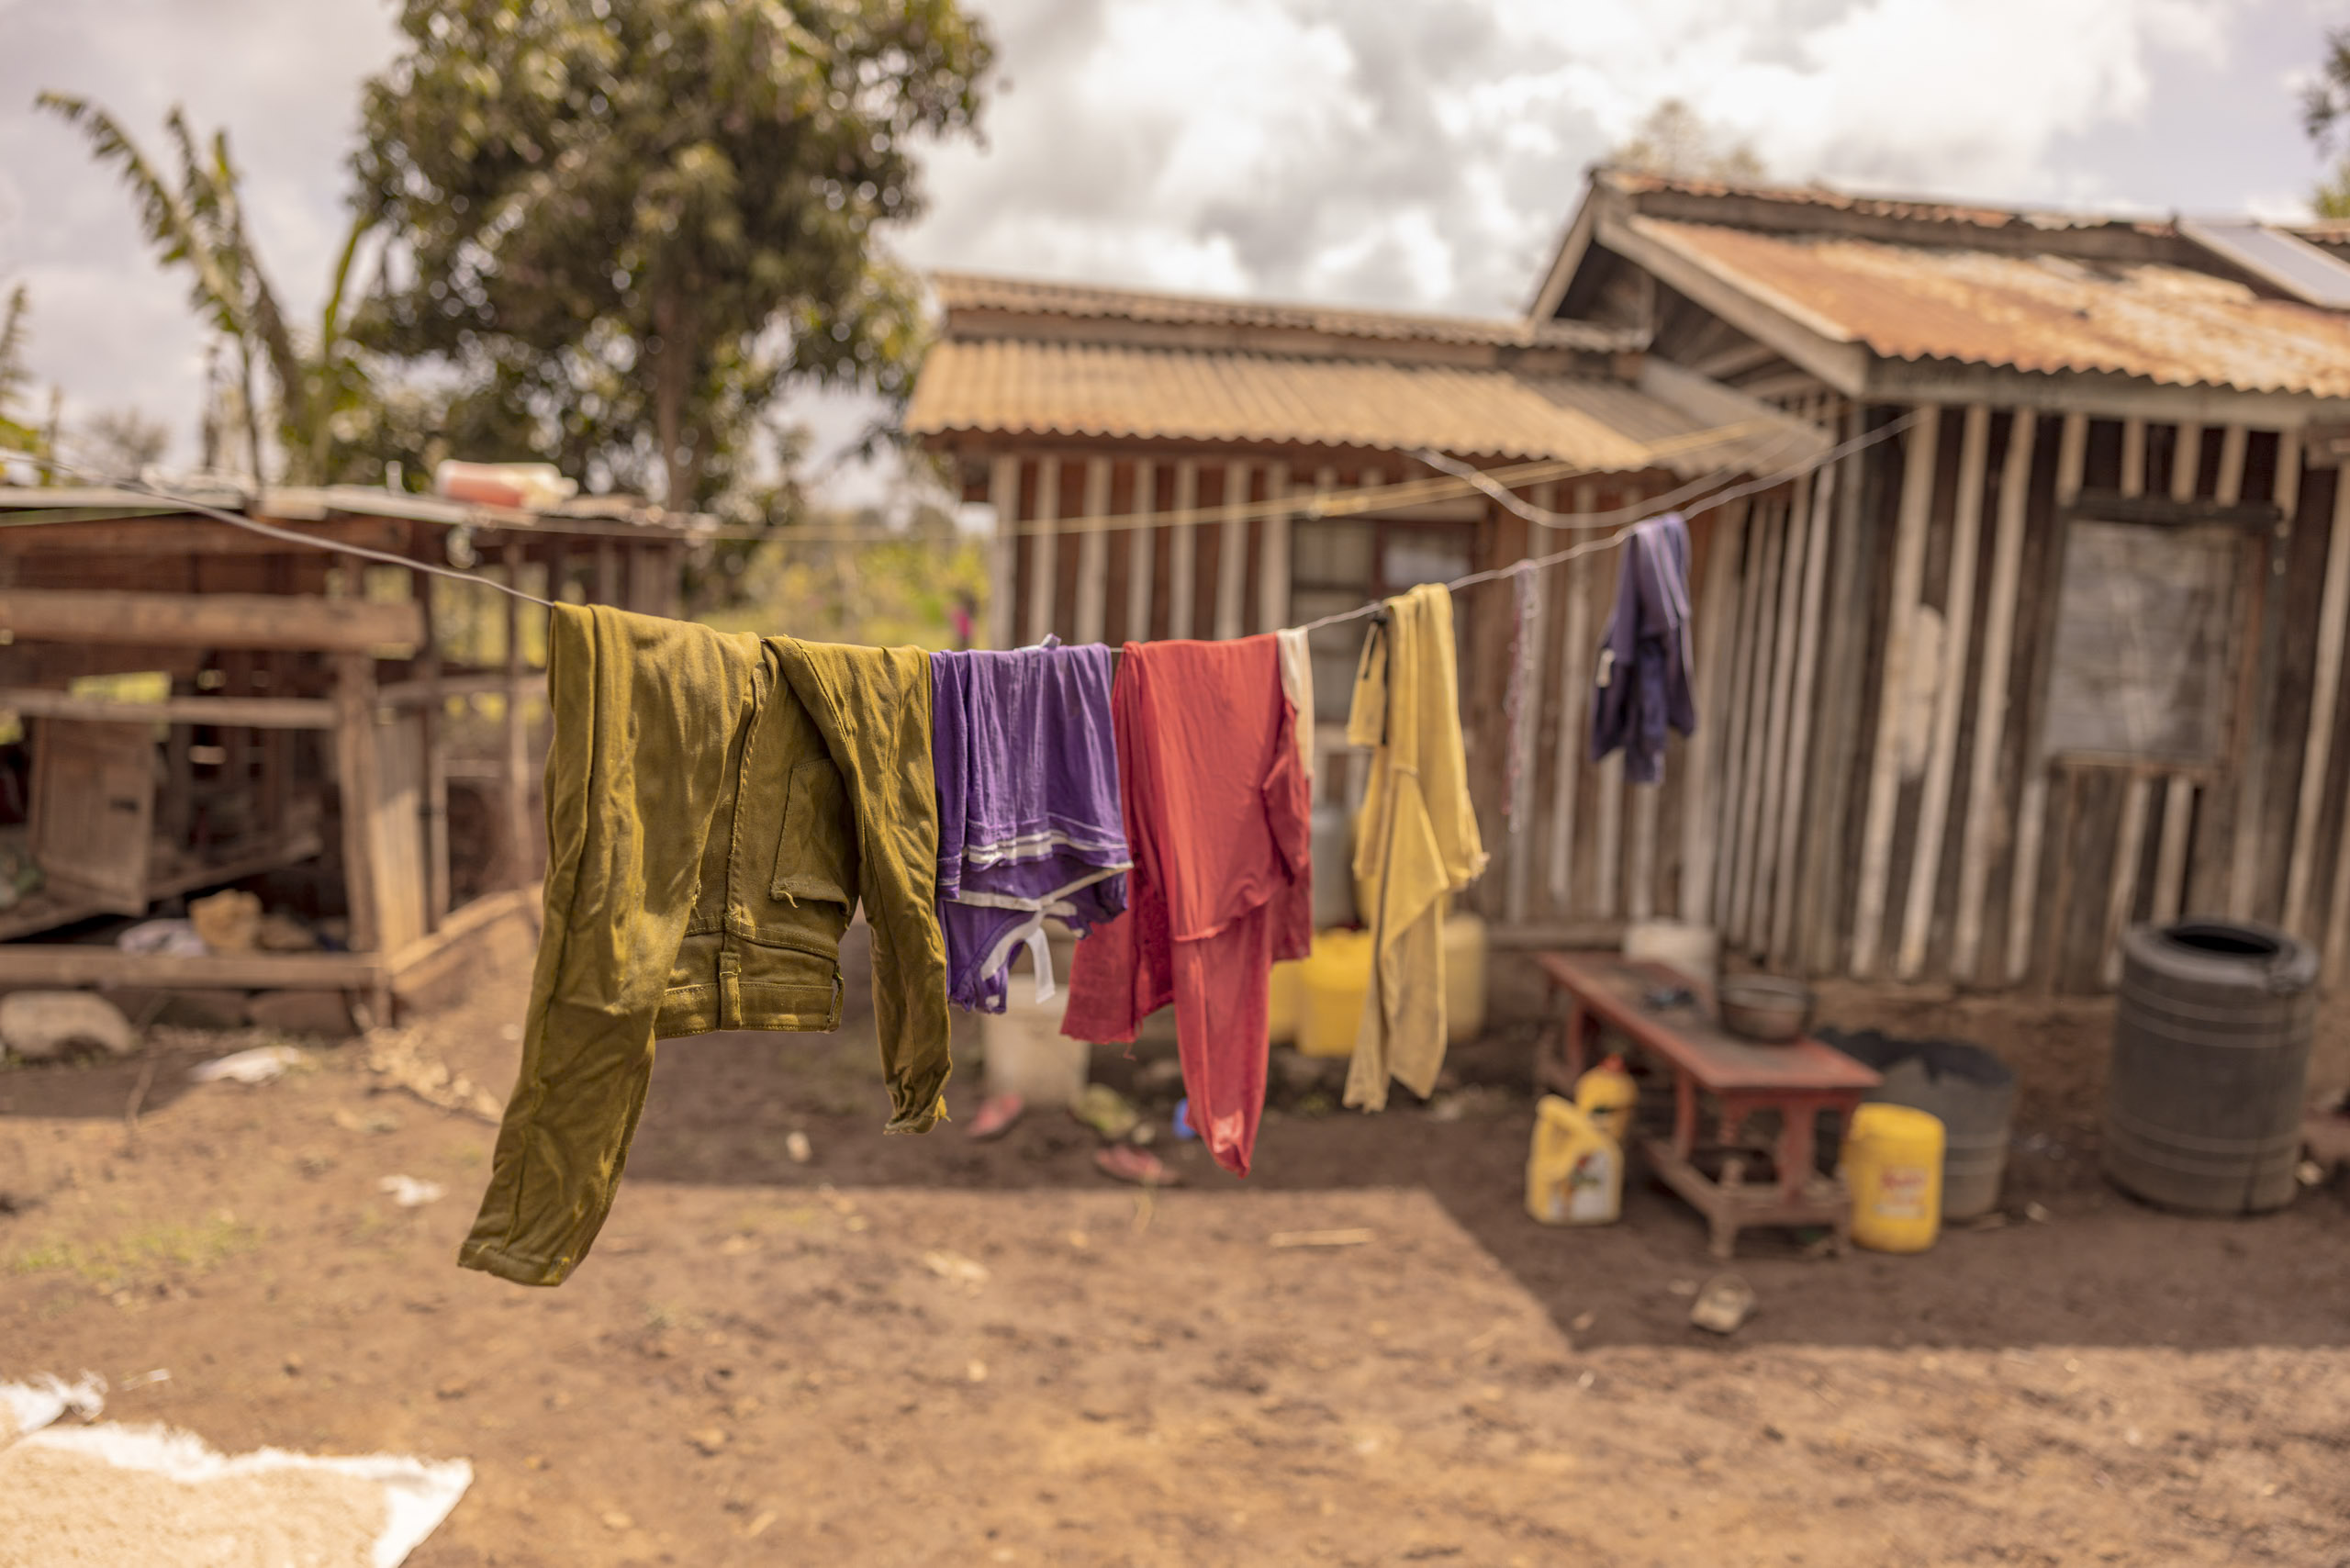 Bunte Kleidung hängt zum Trocknen auf einer Leine in einem ländlichen Hinterhof mit rustikalen Gebäuden und einem bewölkten Himmel im Hintergrund. © Fotografie Tomas Rodriguez